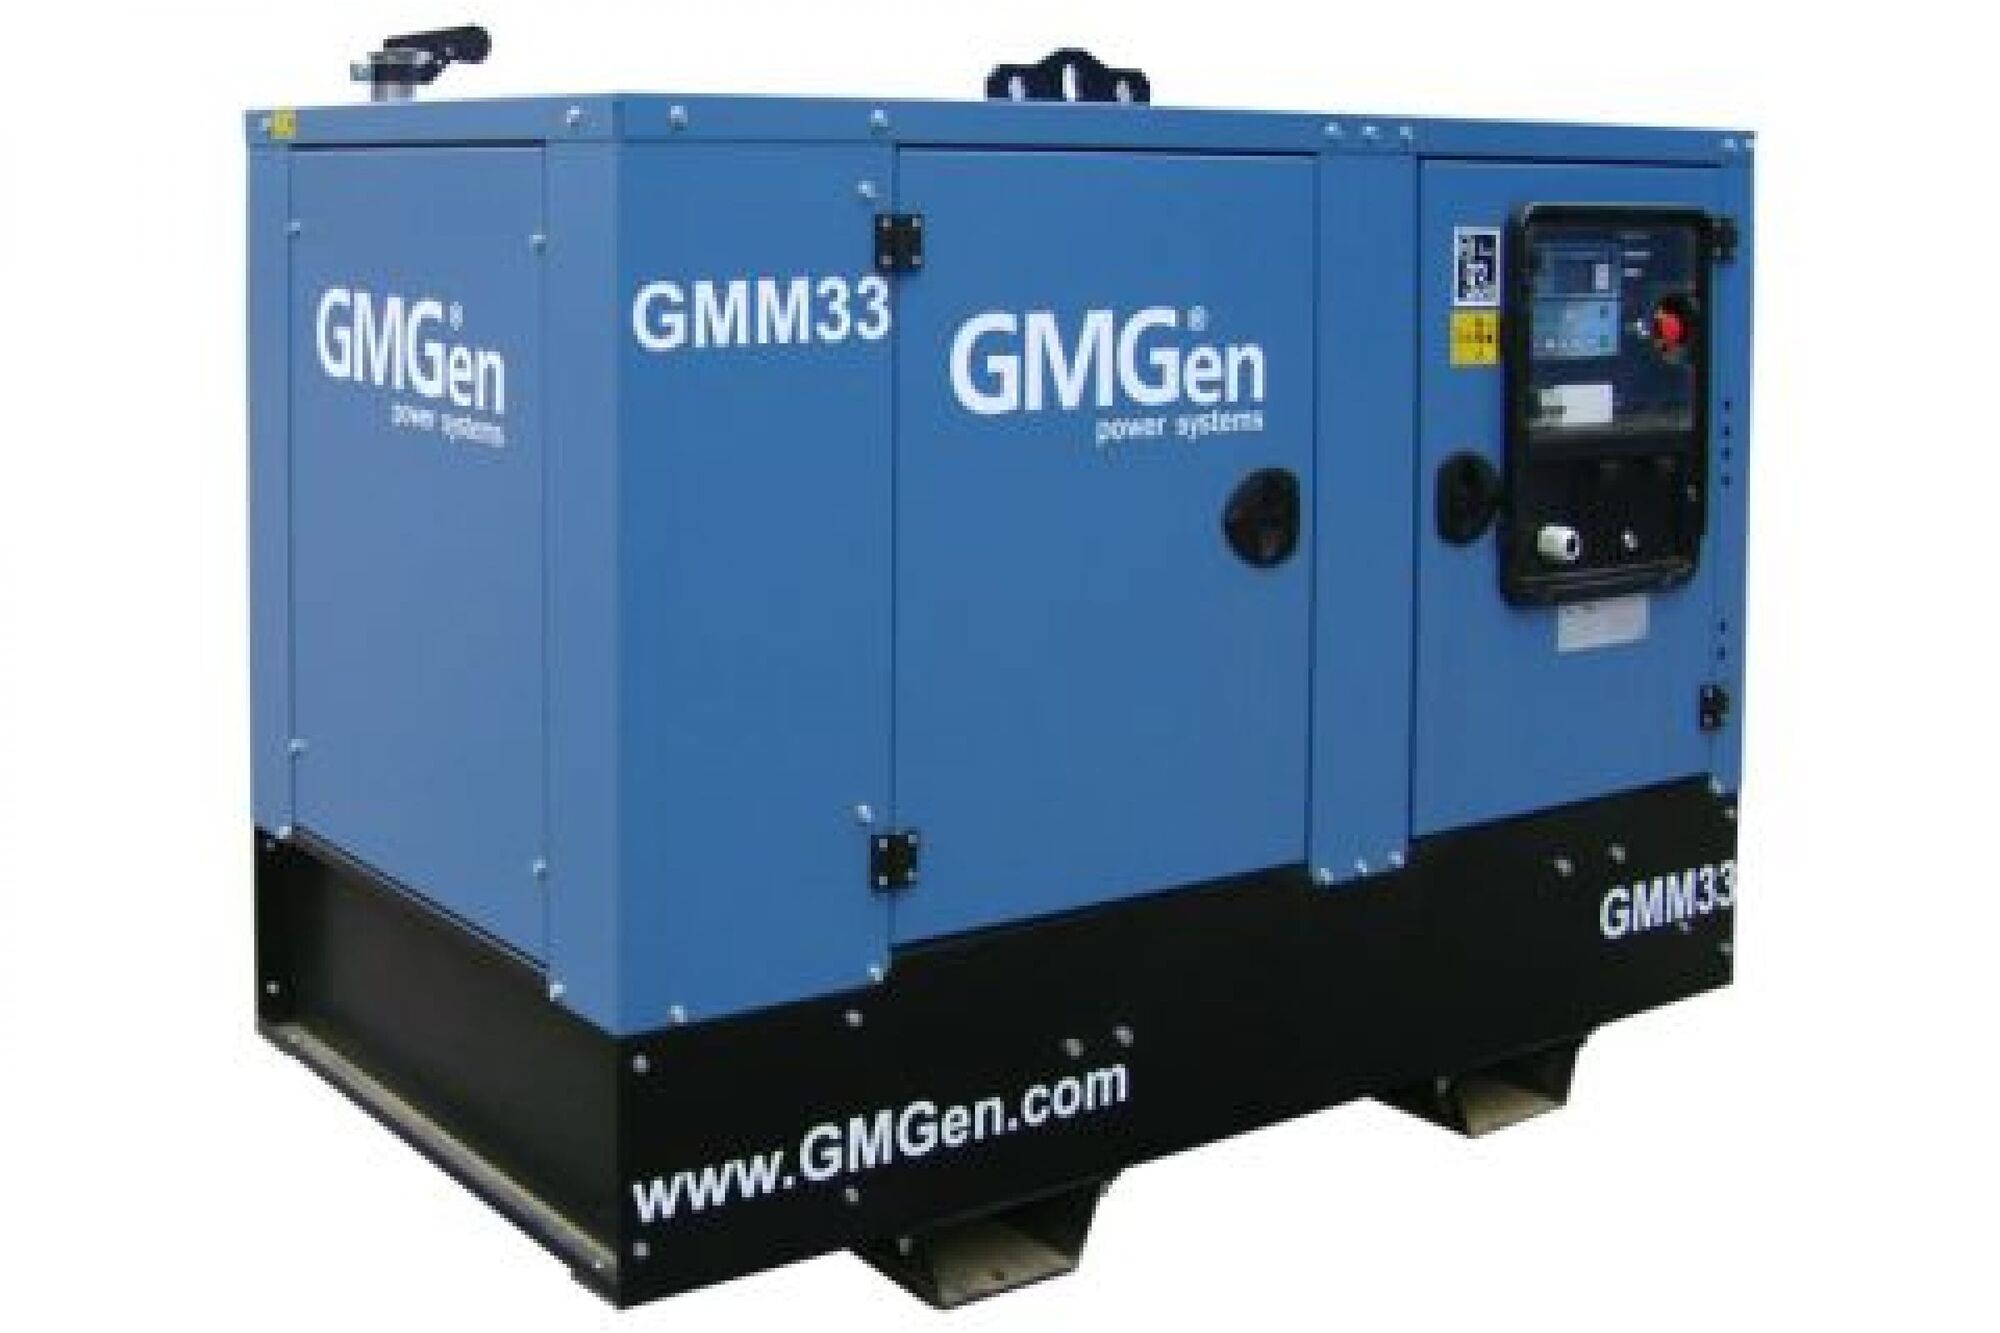 Дизель генератор GMGen Power Systems GMM33 24 кВт, 380/220 В в шумозащитном кожухе 502585